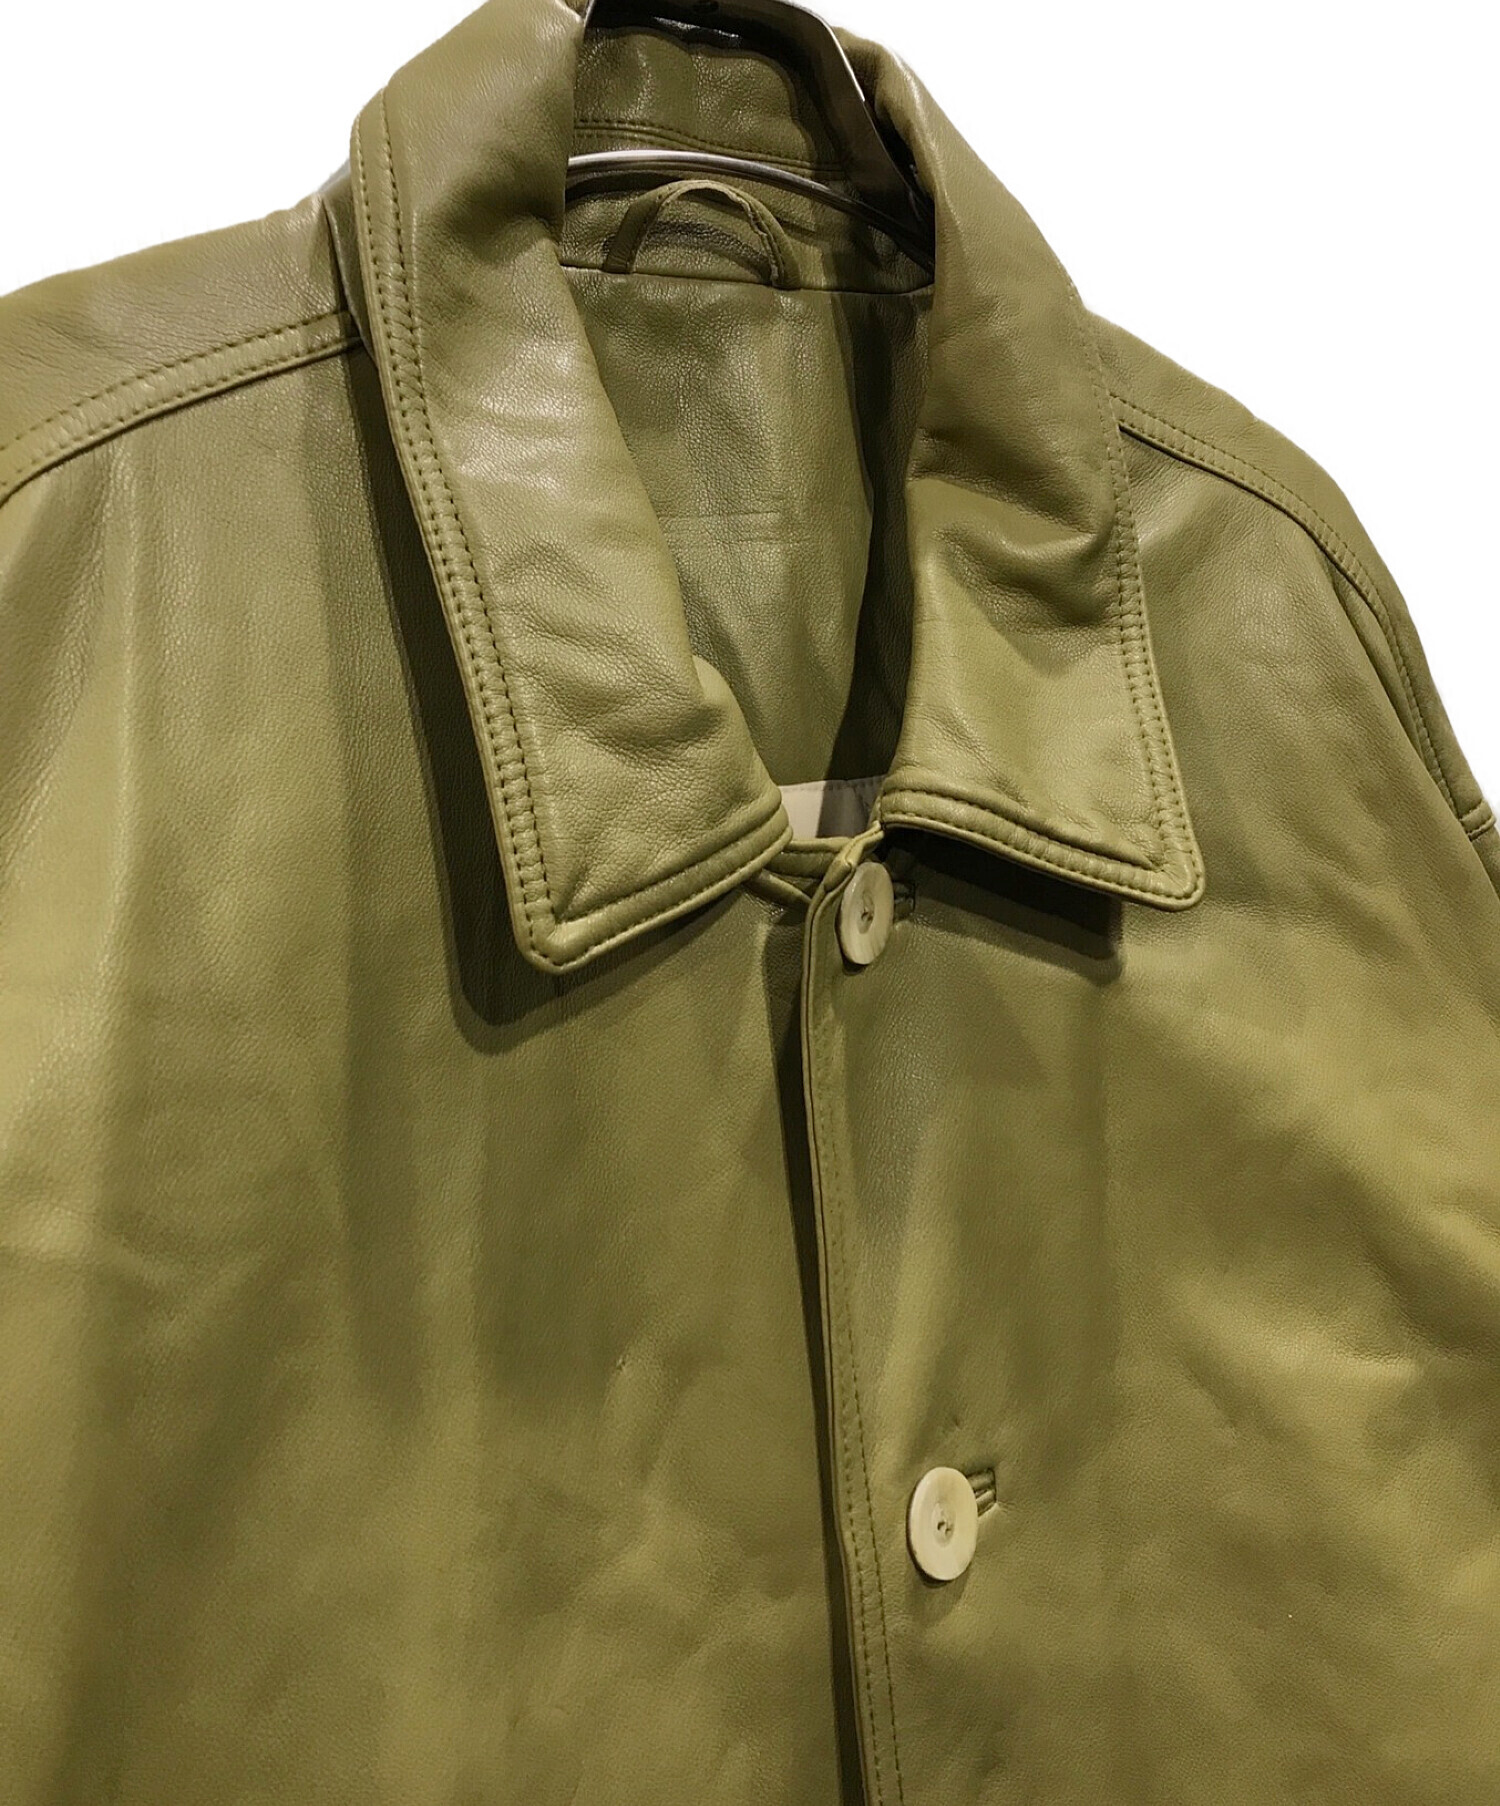 TODAYFUL (トゥデイフル) Leather Over Jacket レザーオーバージャケット カーキ サイズ:36